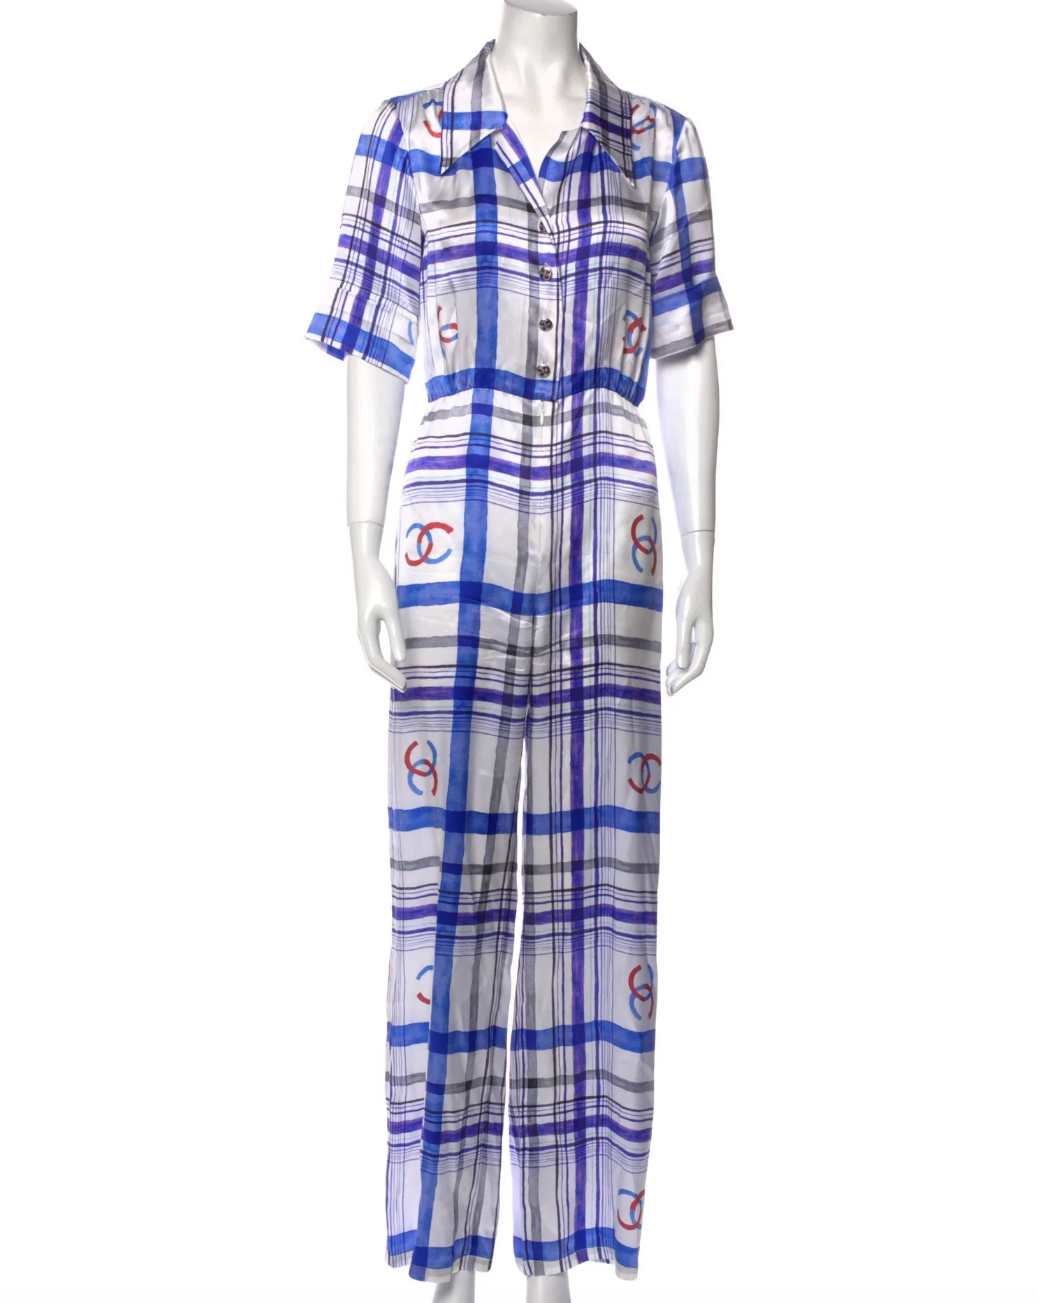 Dorit Kemsley's White and Blue Plaid Jumpsuit